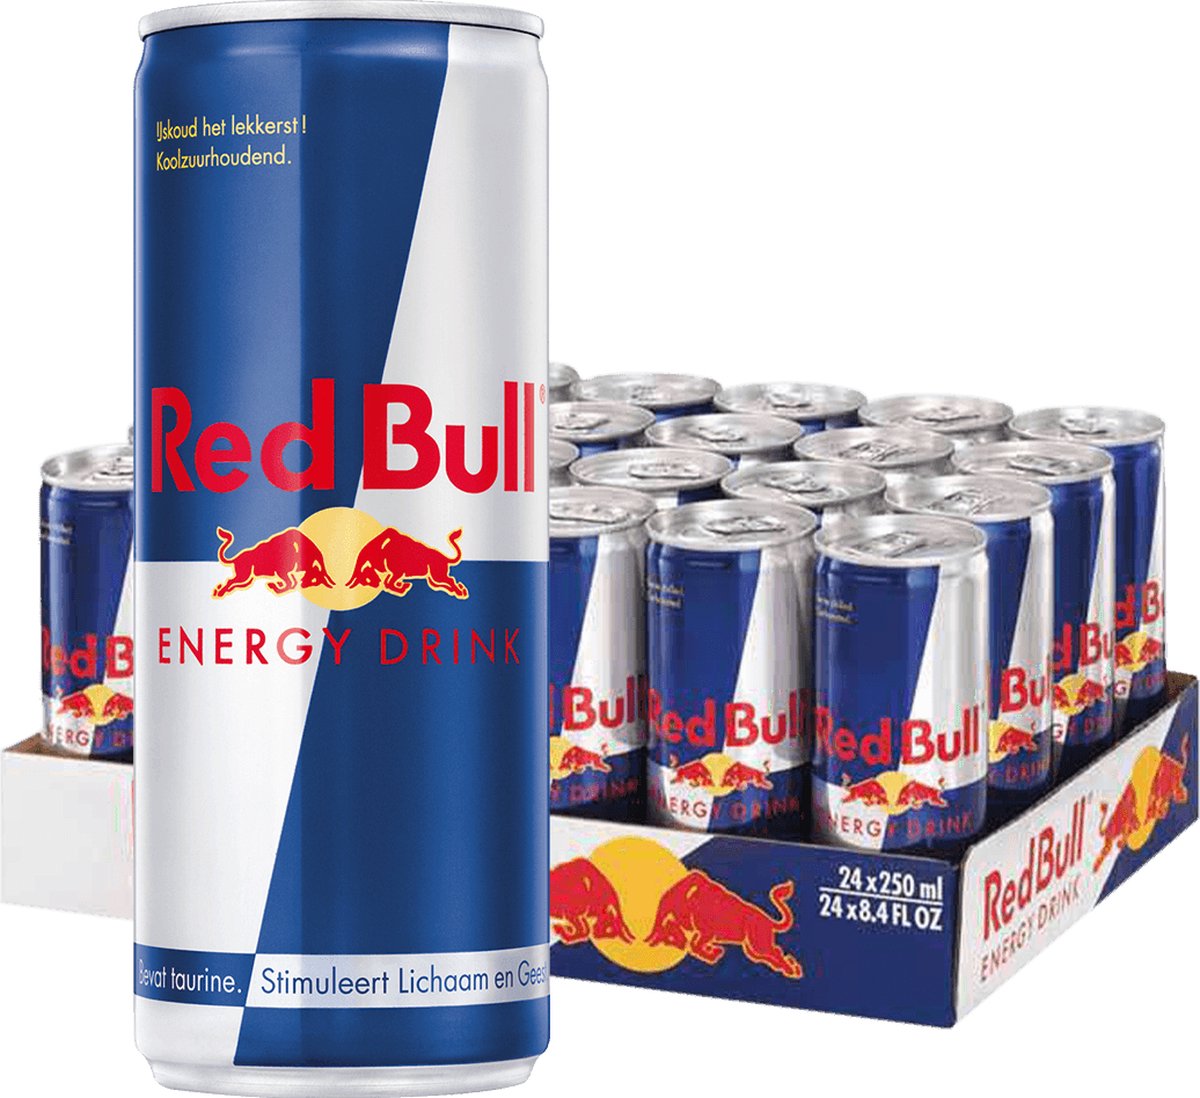 Red Bull - Energy Drink - 24 x 250 ml - Red Bull